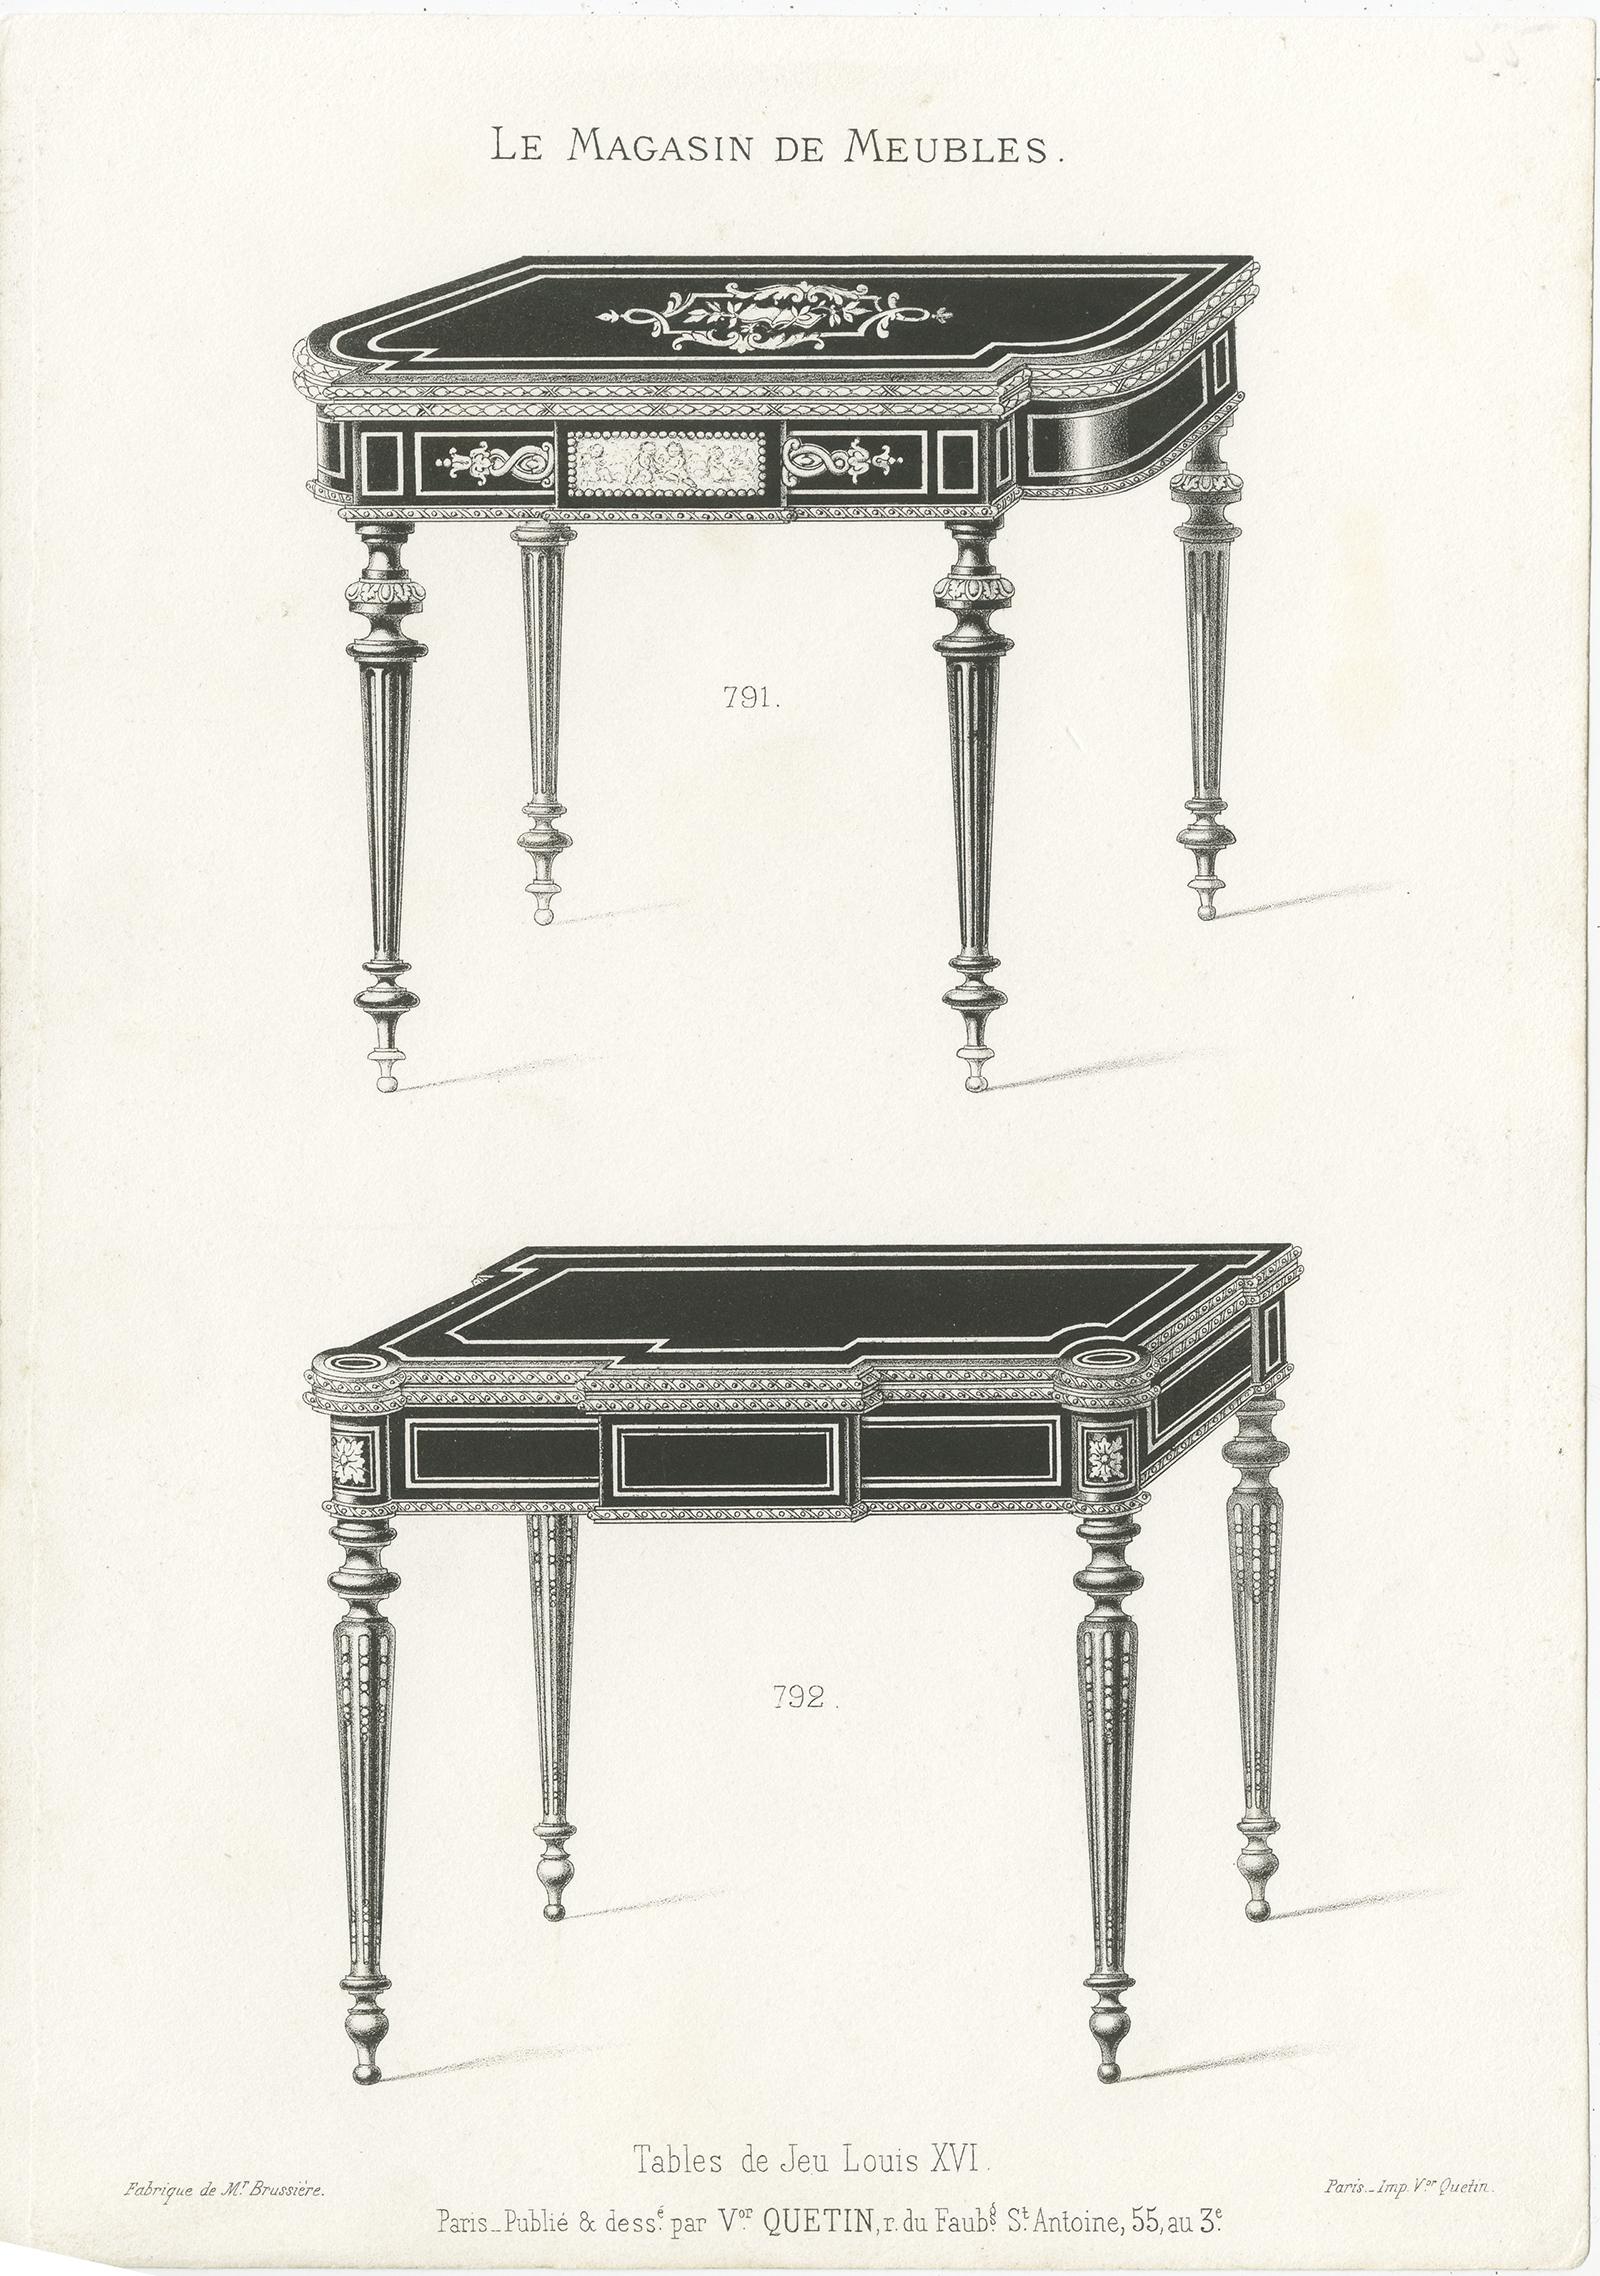 Ensemble de deux gravures de meubles anciens représentant des tables de jeu. Ces tirages proviennent de l'ouvrage 